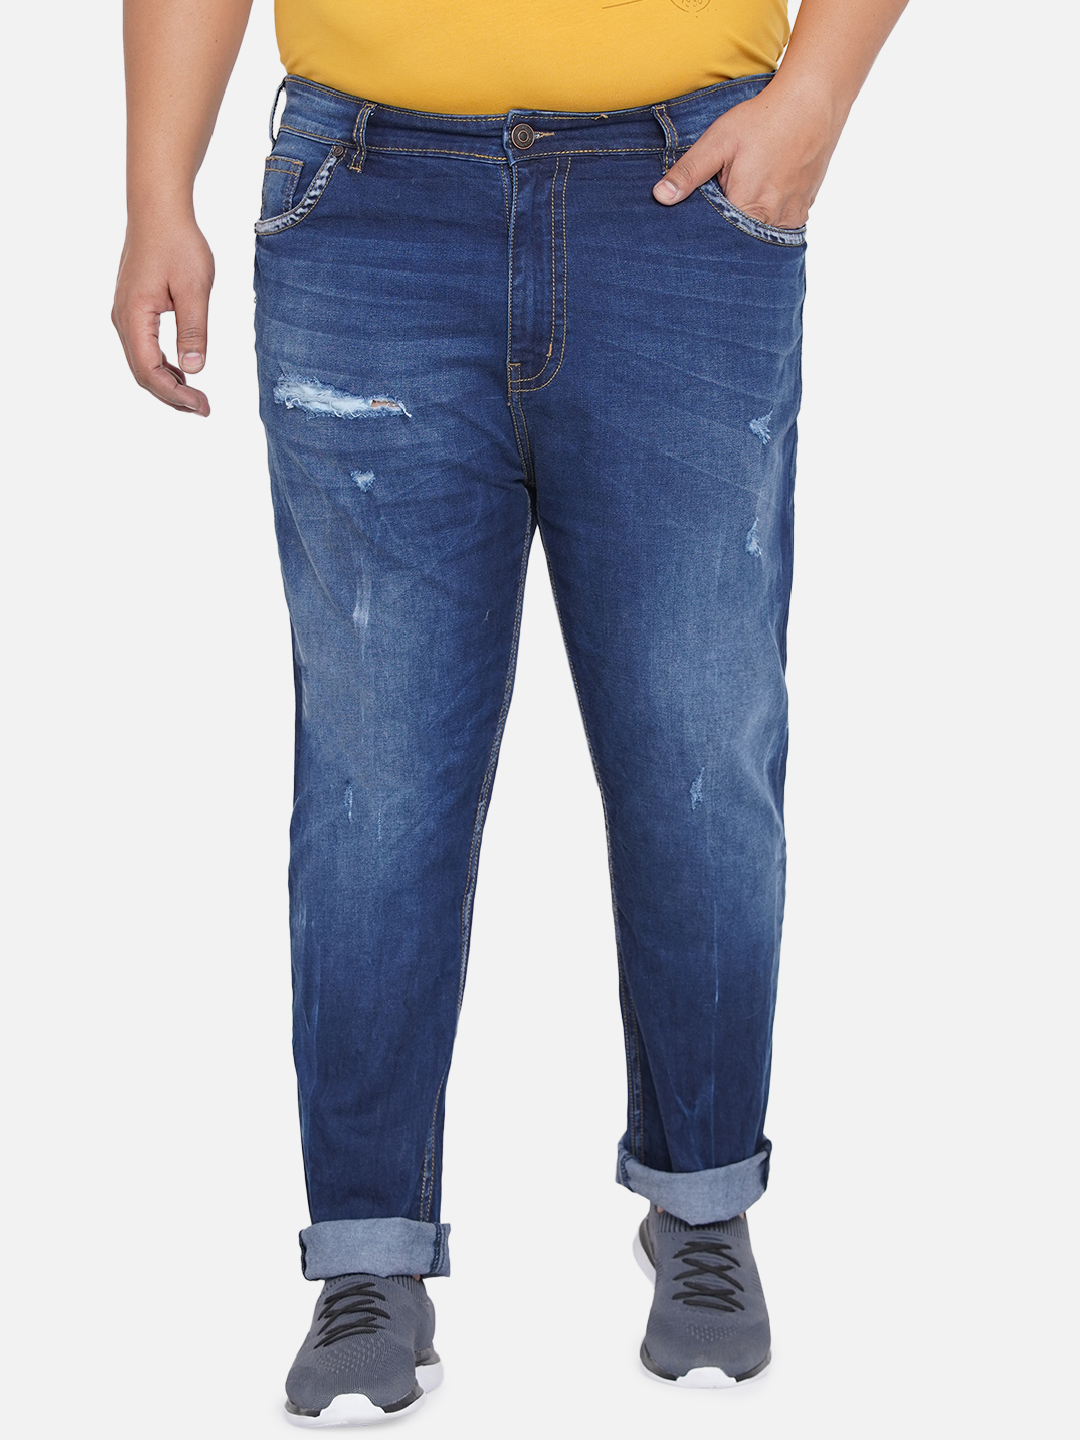 bottomwear/jeans/JPJ12202/jpj12202-1.jpg